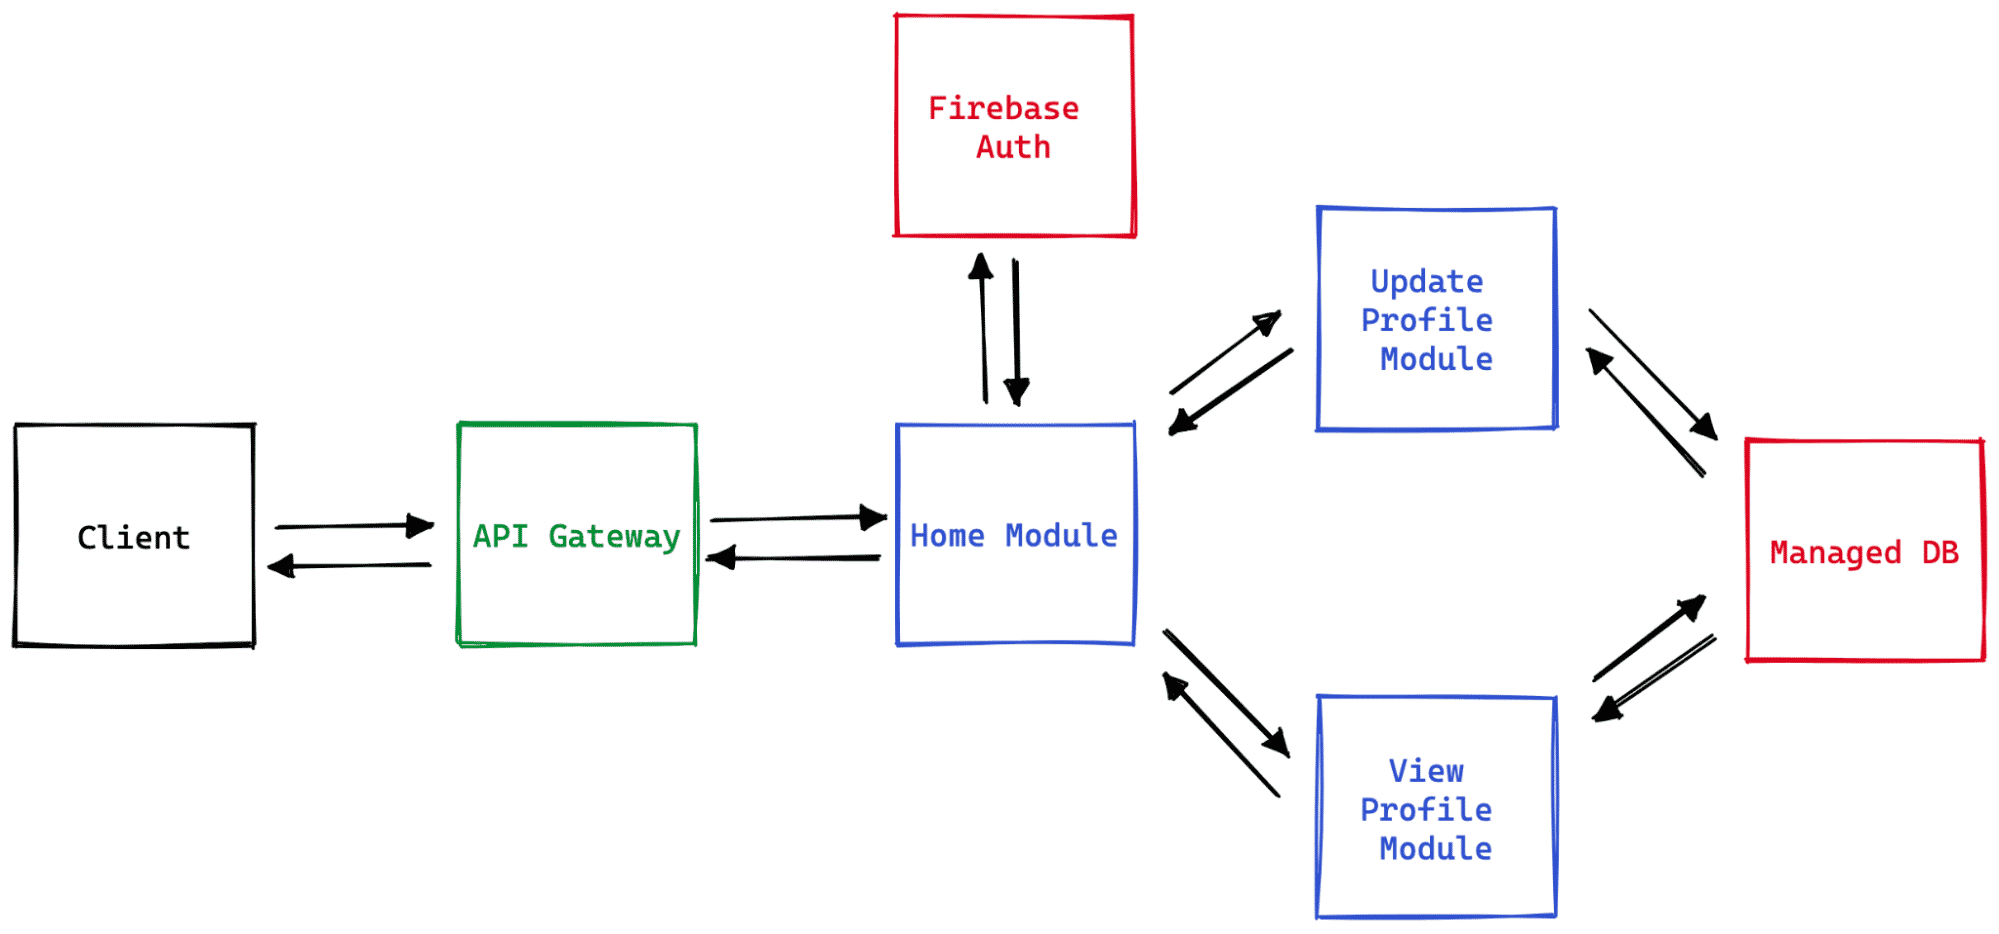 Diagramma dei componenti di un'applicazione web serverless che mostra come i vari componenti, come il gateway API, le API esterne e i servizi, interagiscono tra loro.